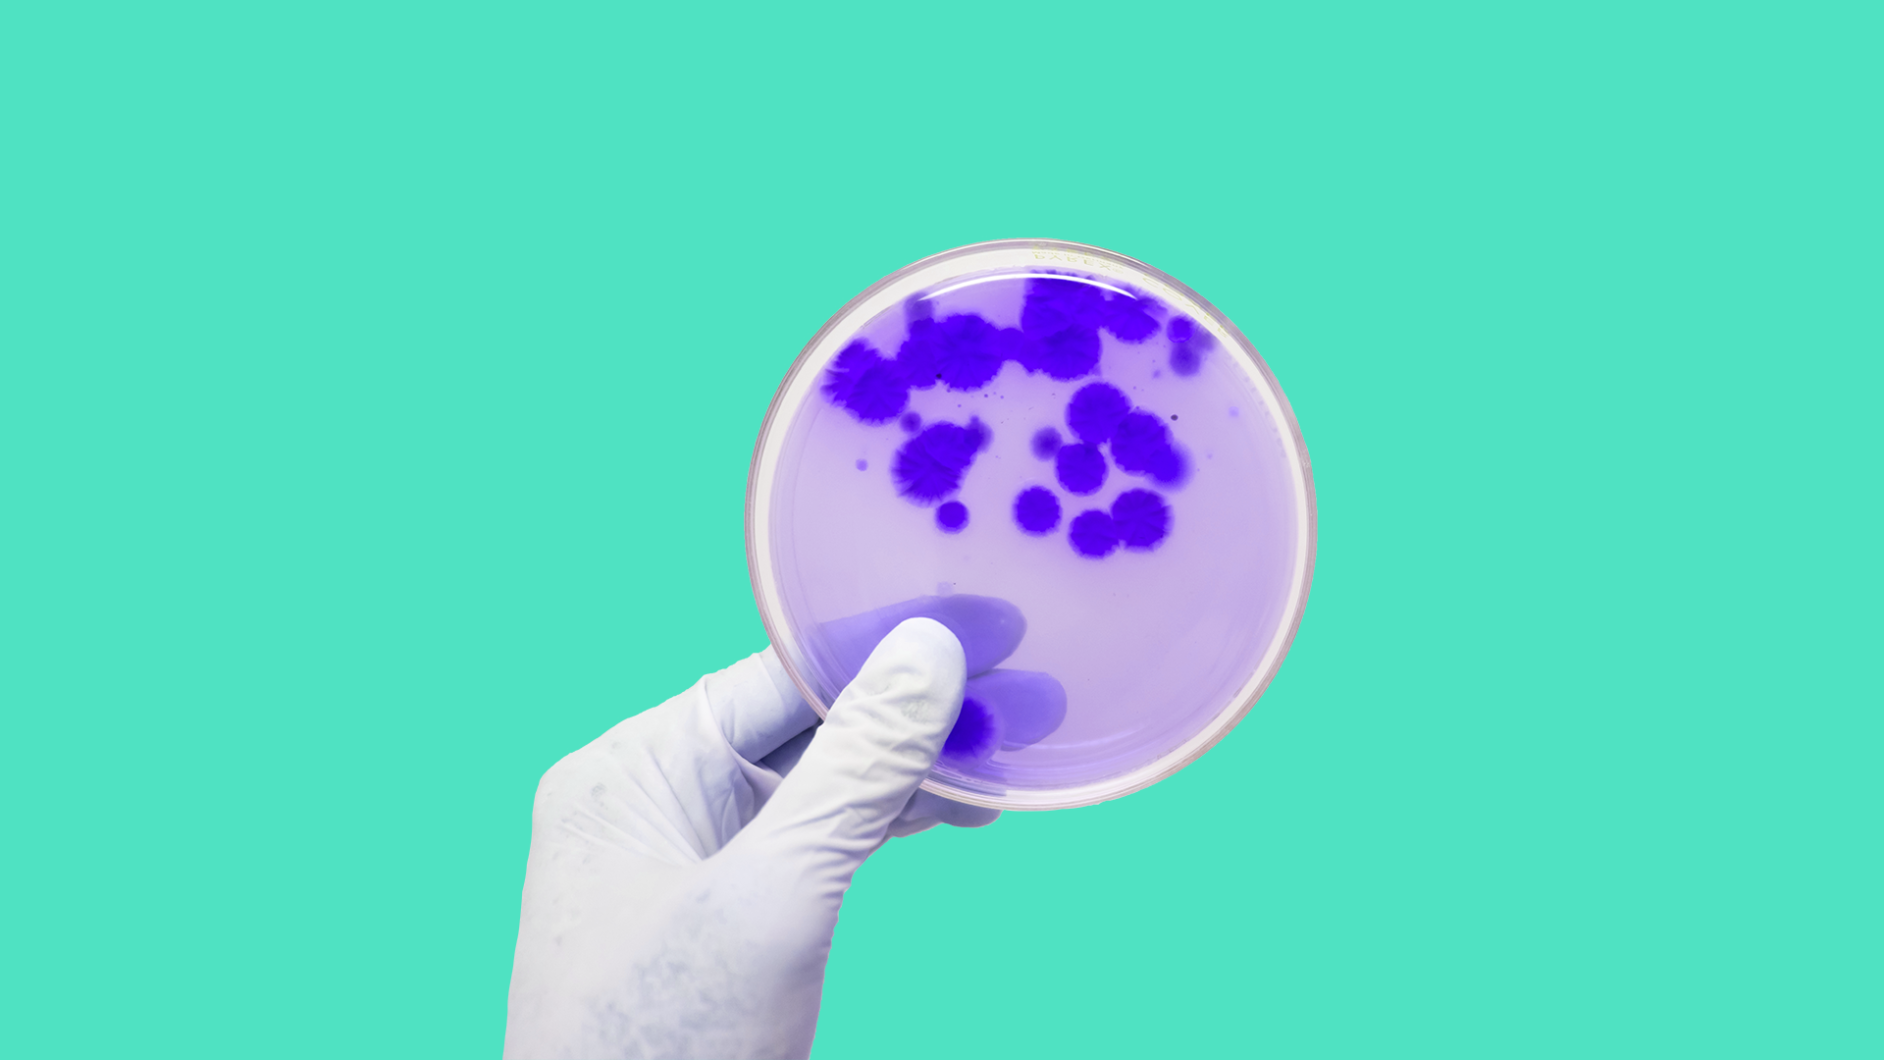 A petri dish represents antibiotics that cause C.Diff